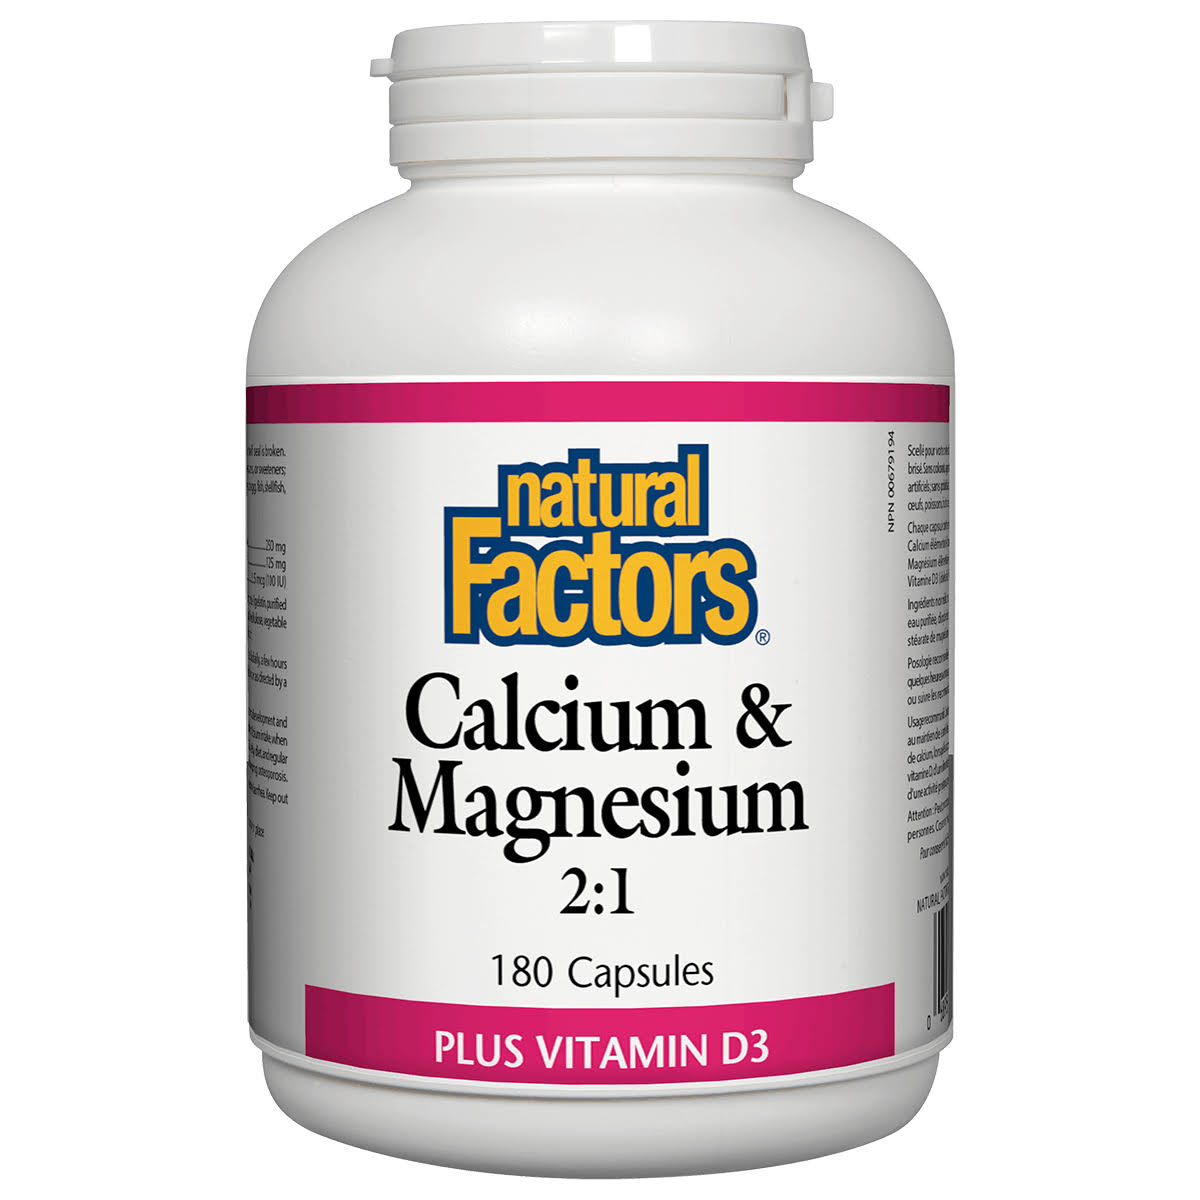 Natural Factors Calcium & Magnesium 2:1 Plus Vitamin D3 180 Capsules